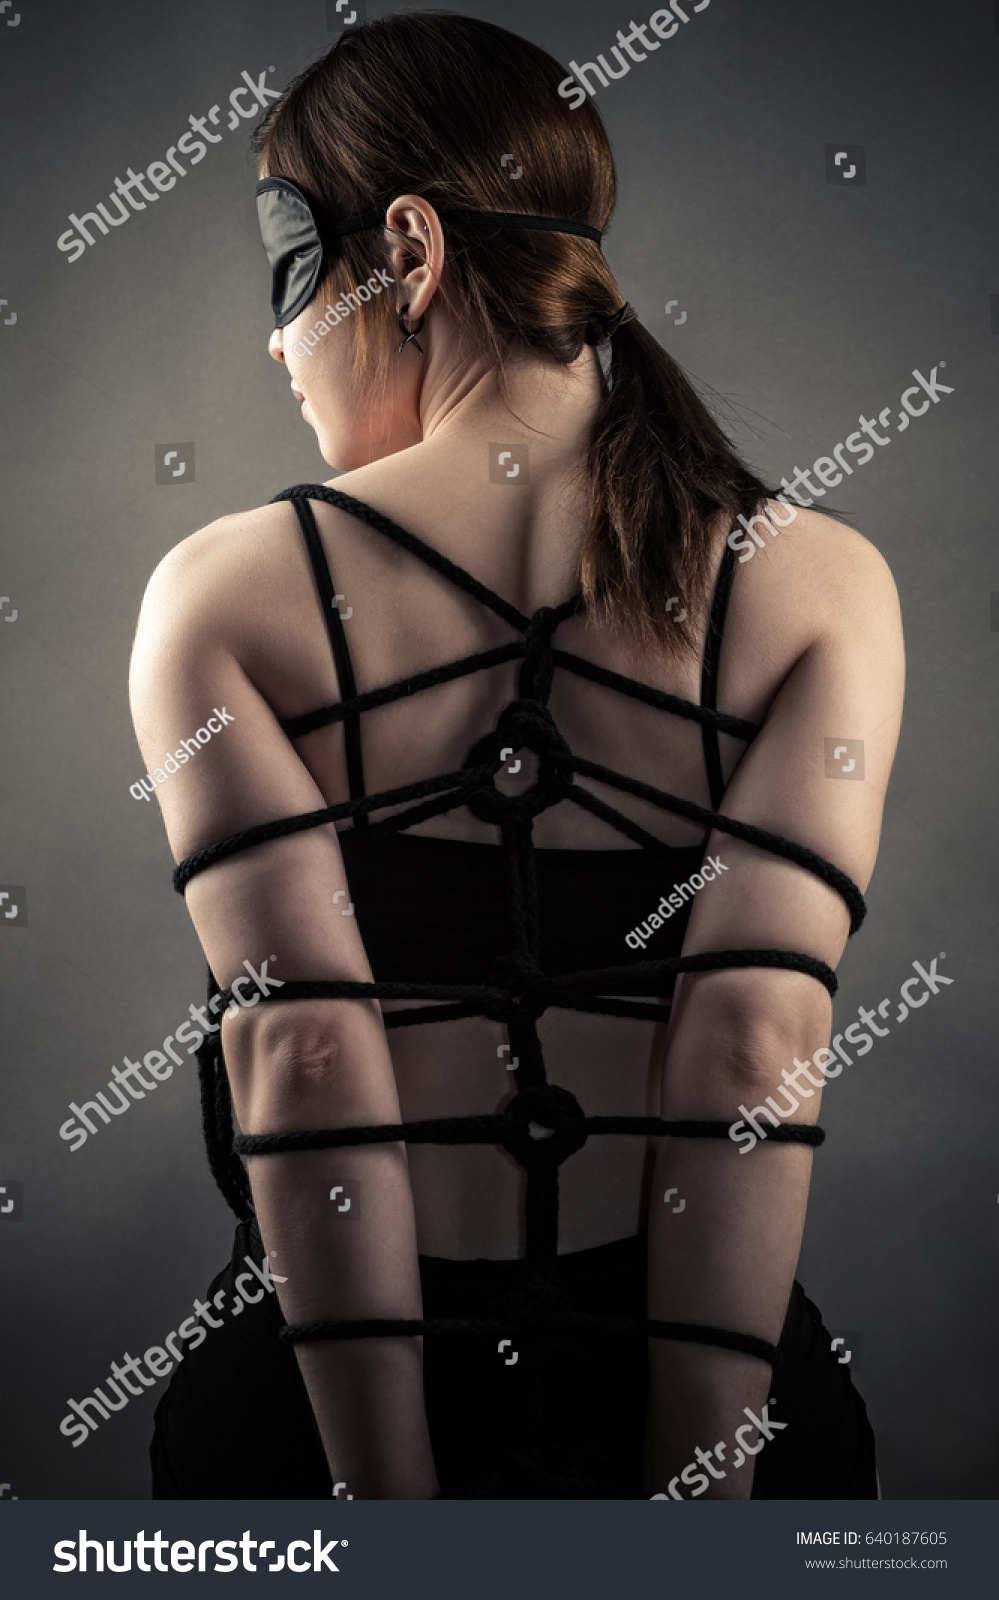 Woman rope bondage